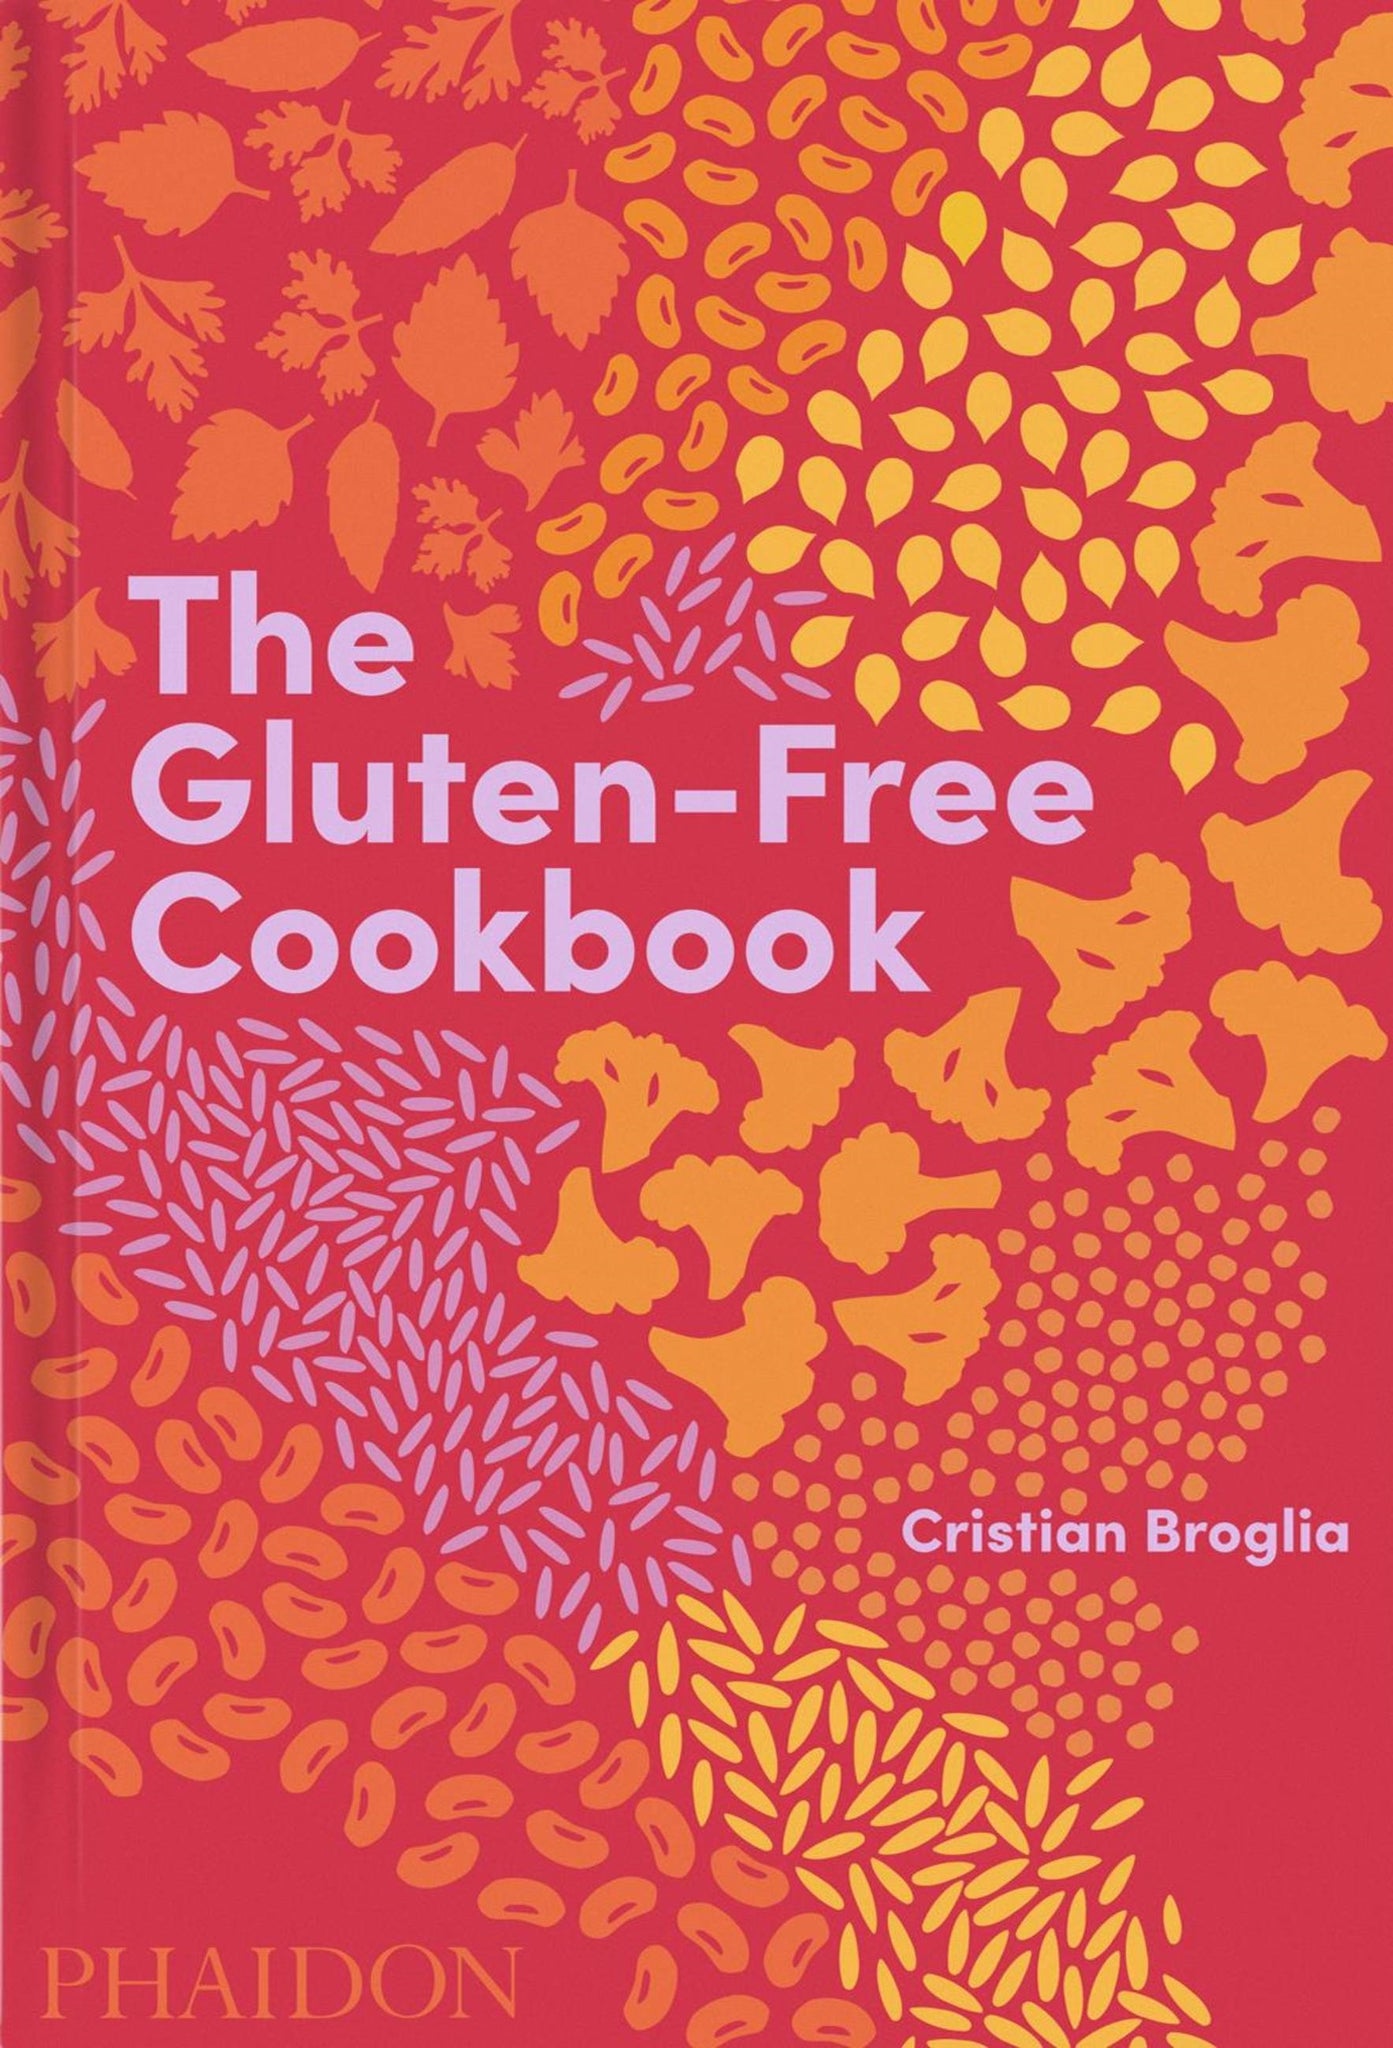 The Gluten-Free Cookbook by Cristian Broglia